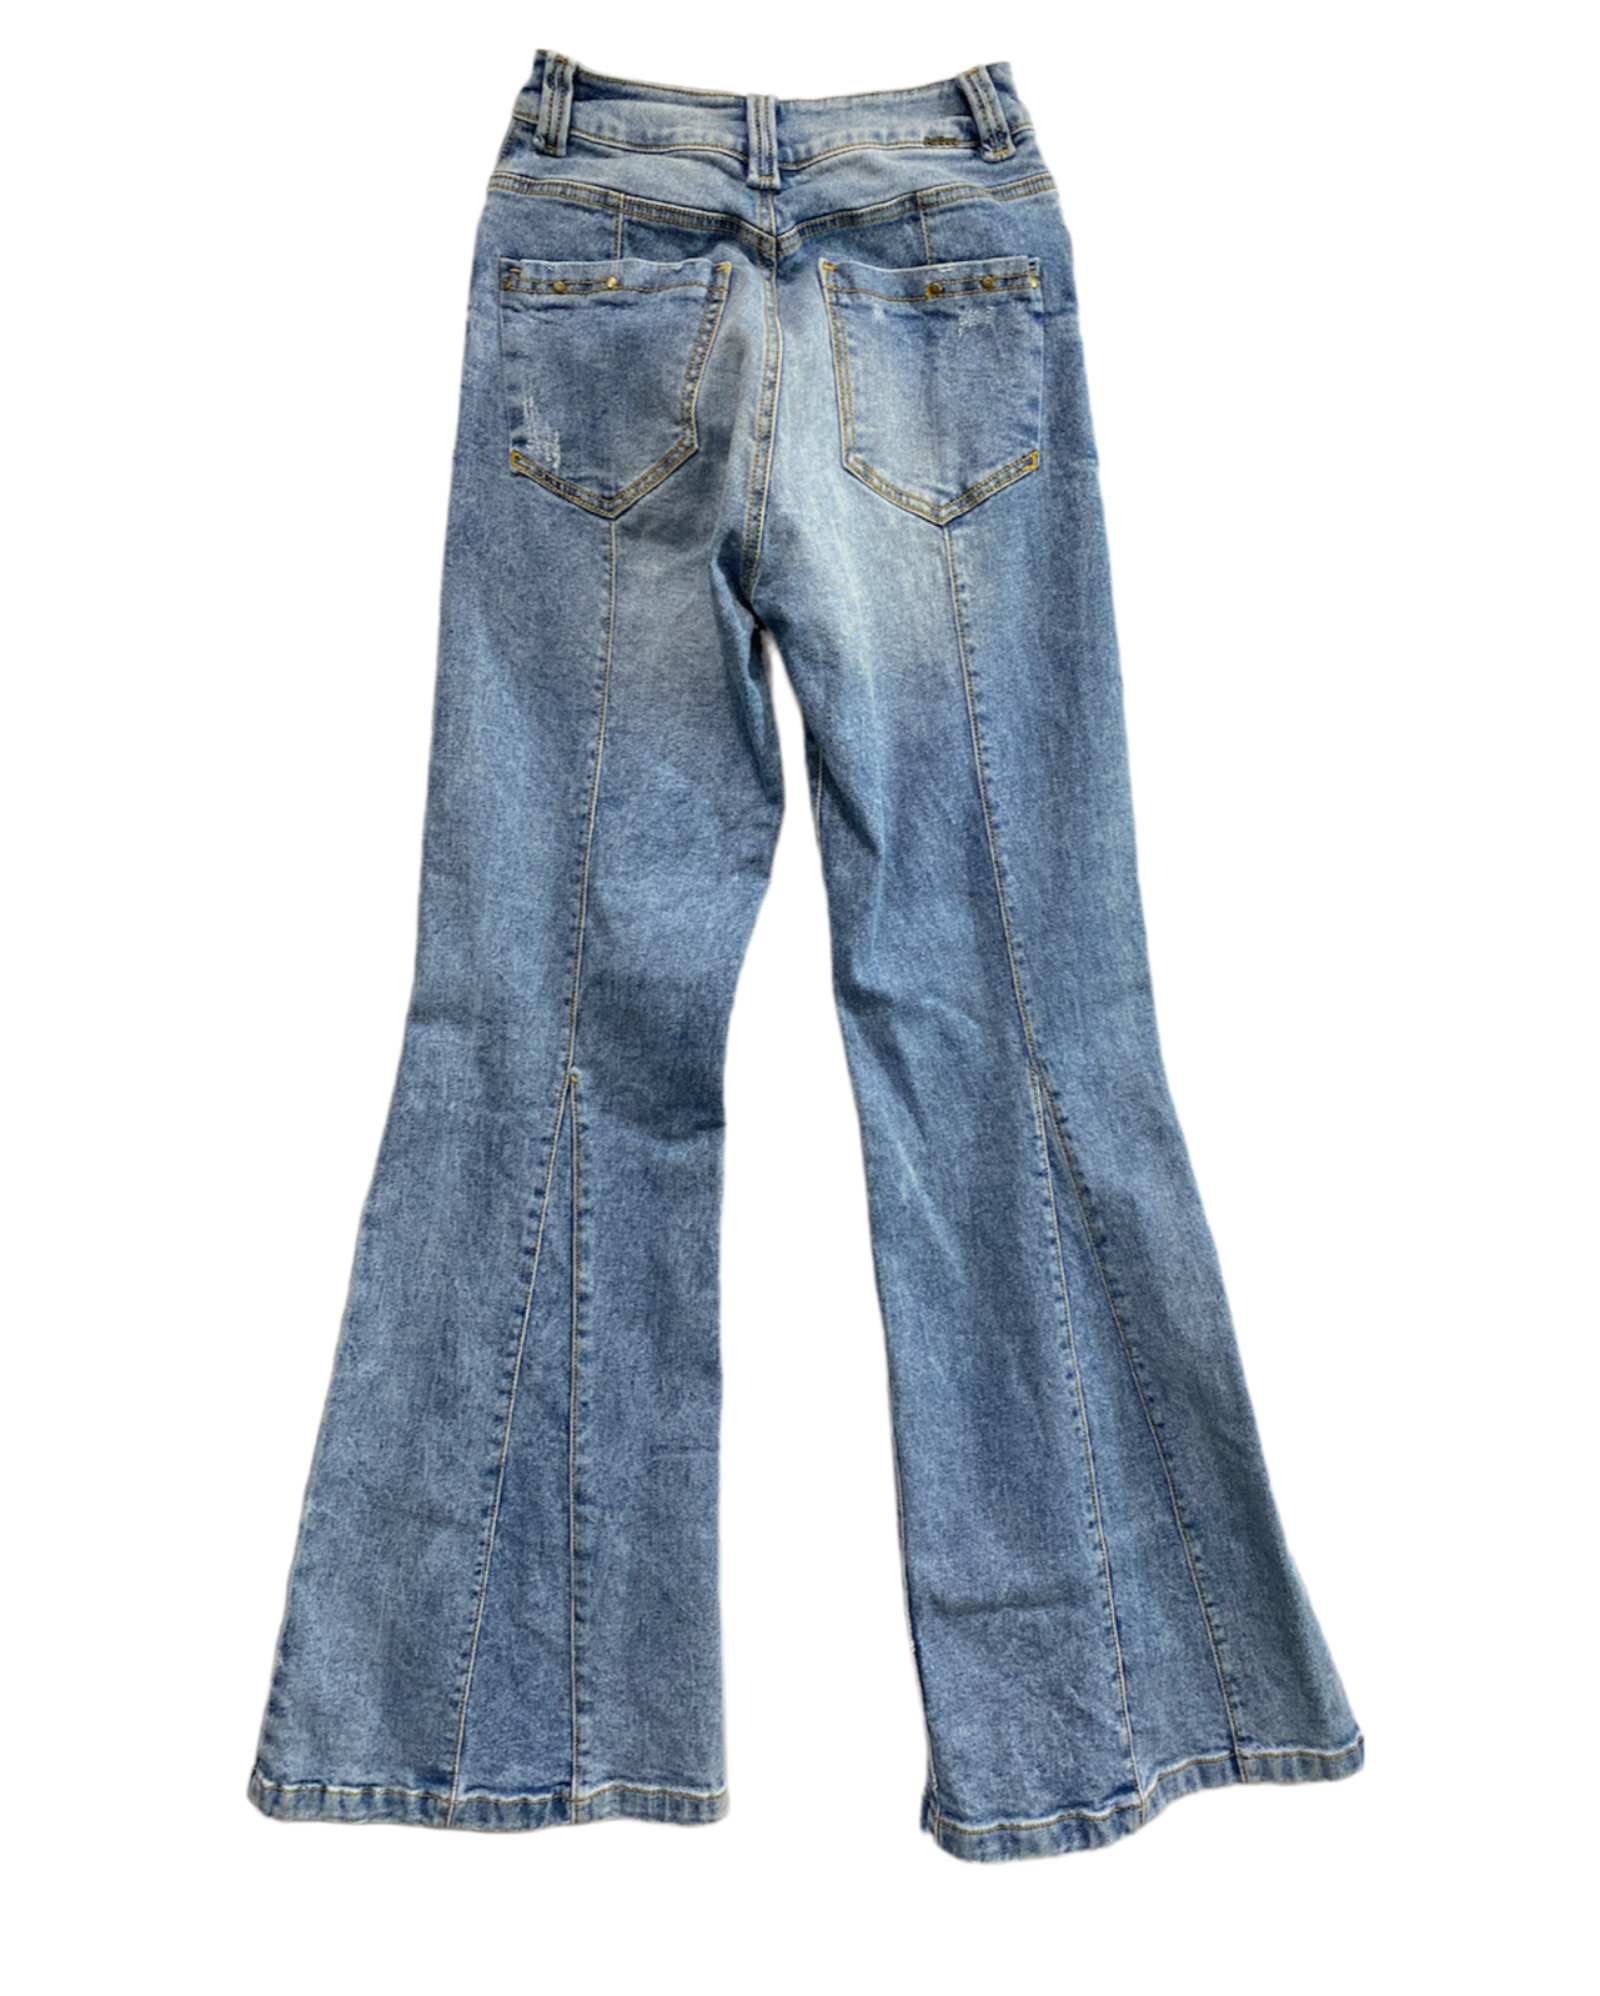 Jeans Acampanados 2